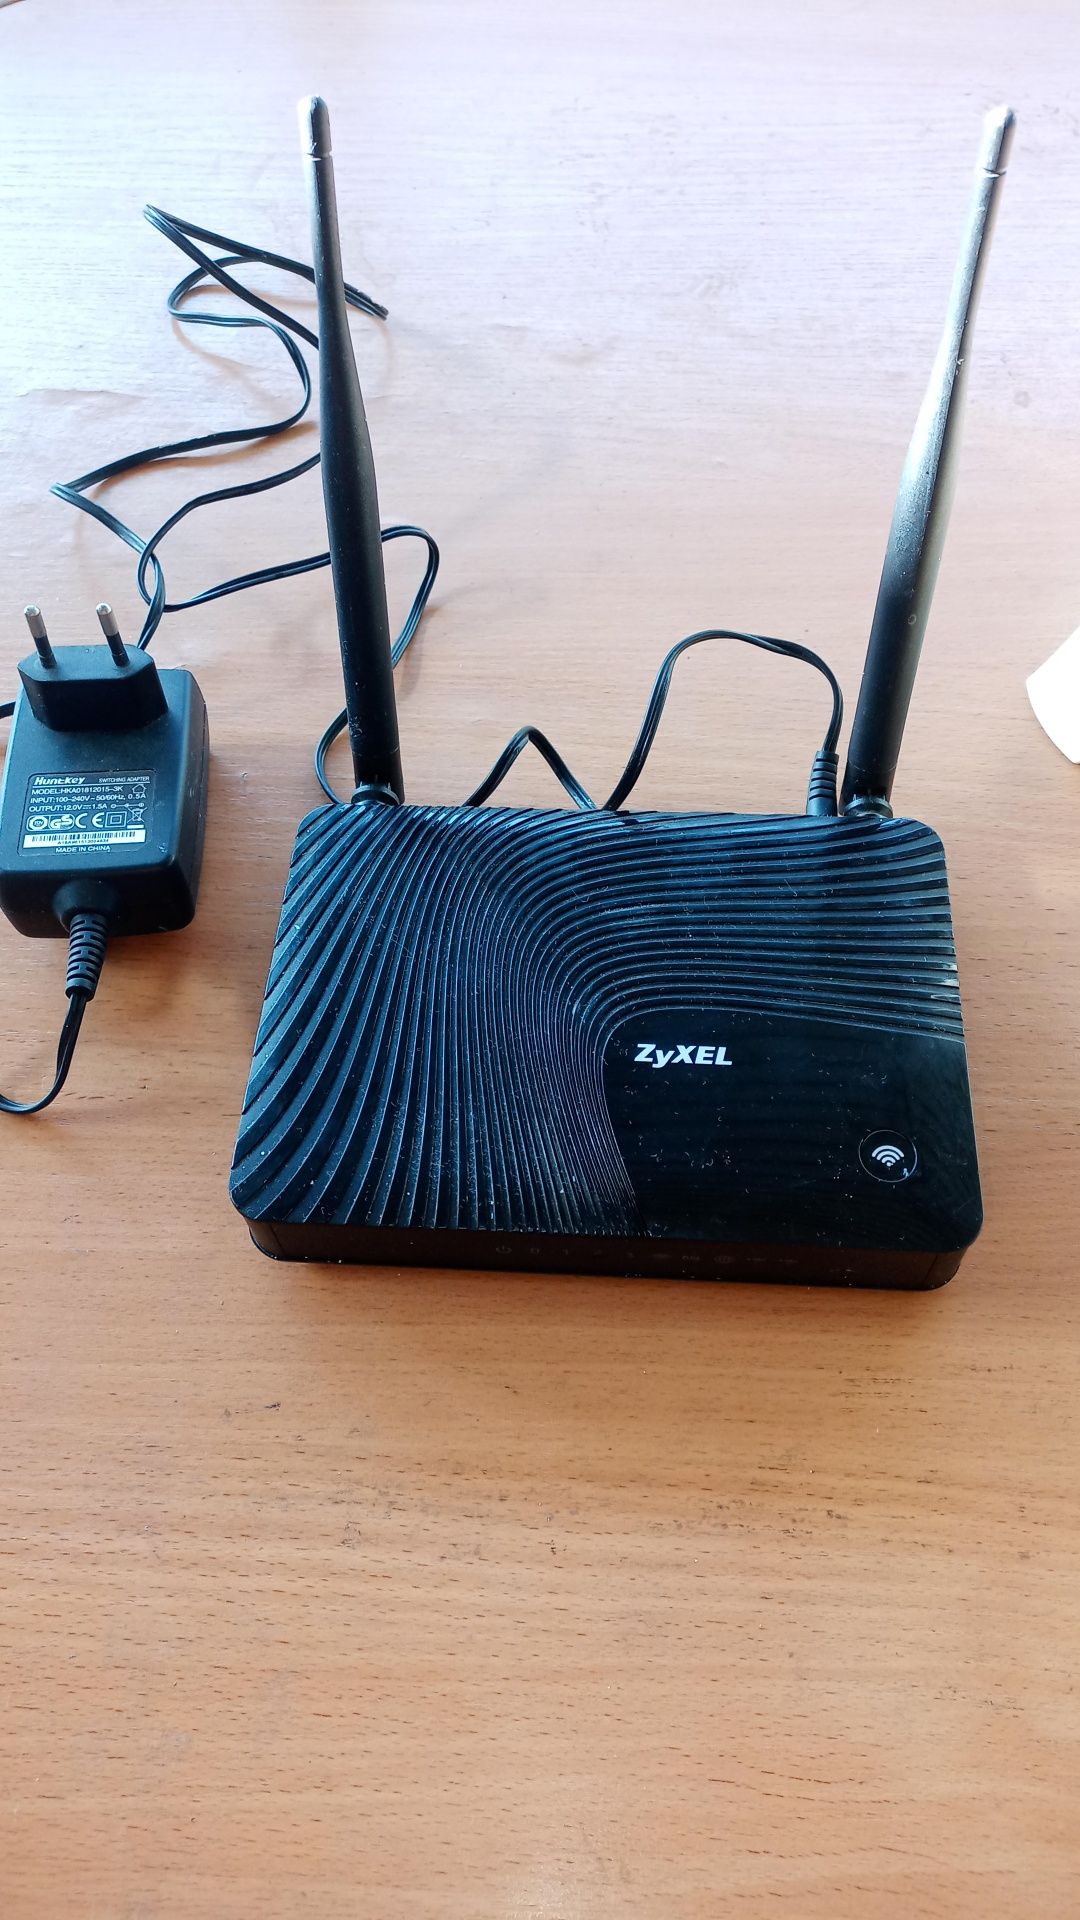 Модем ADSL для интернета